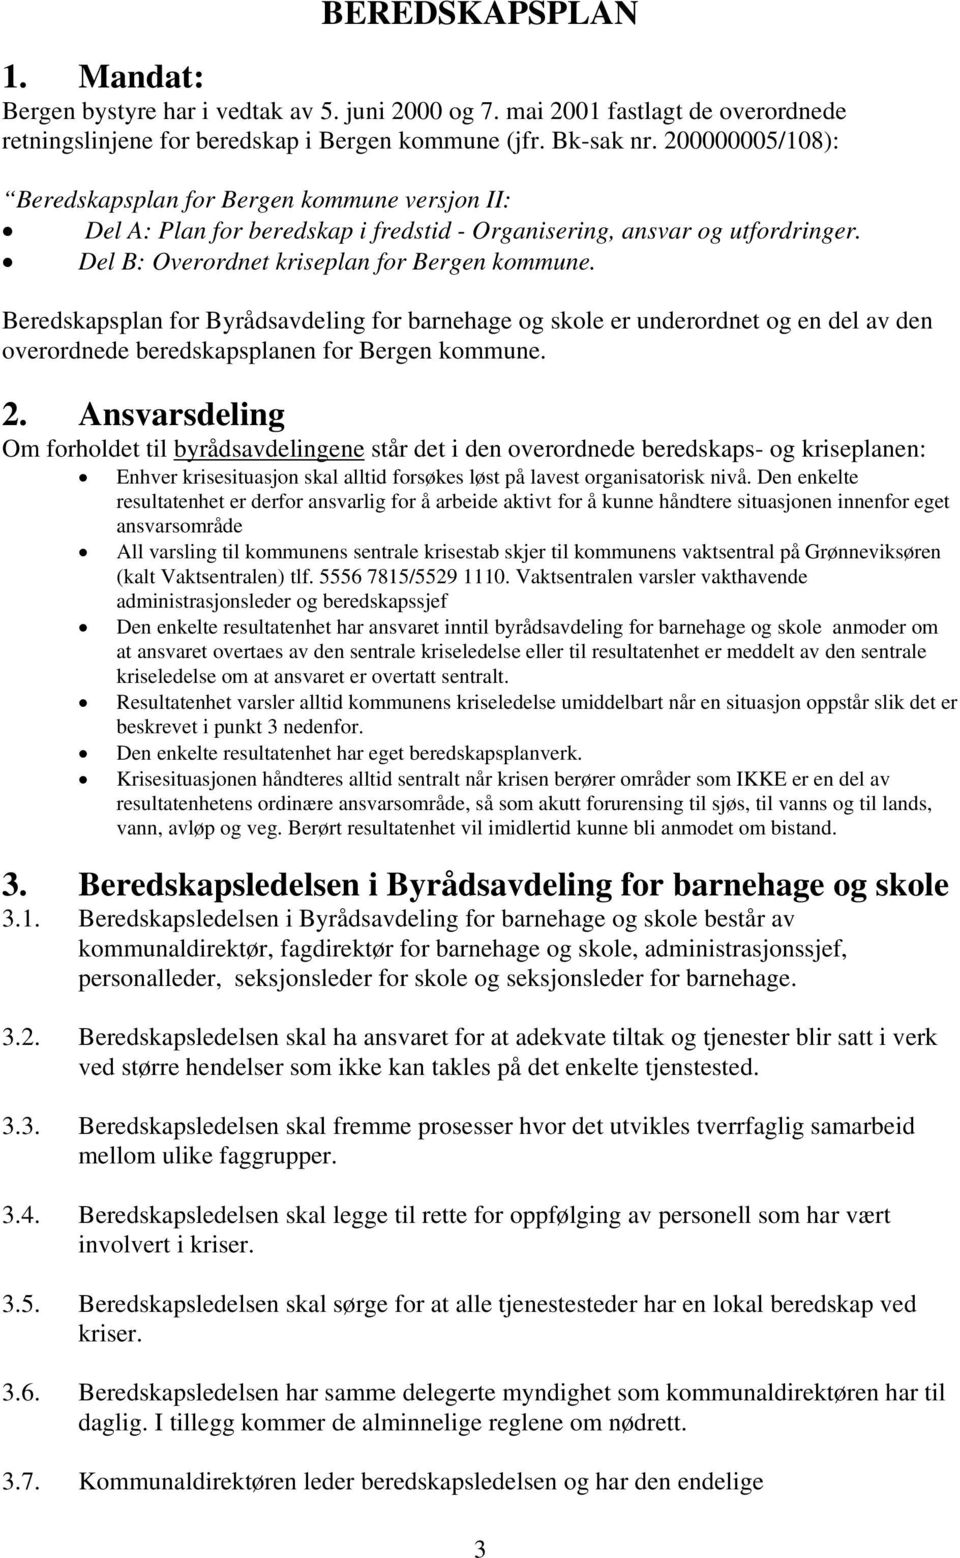 Beredskapsplan for Byrådsavdeling for barnehage og skole er underordnet og en del av den overordnede beredskapsplanen for Bergen kommune. 2.